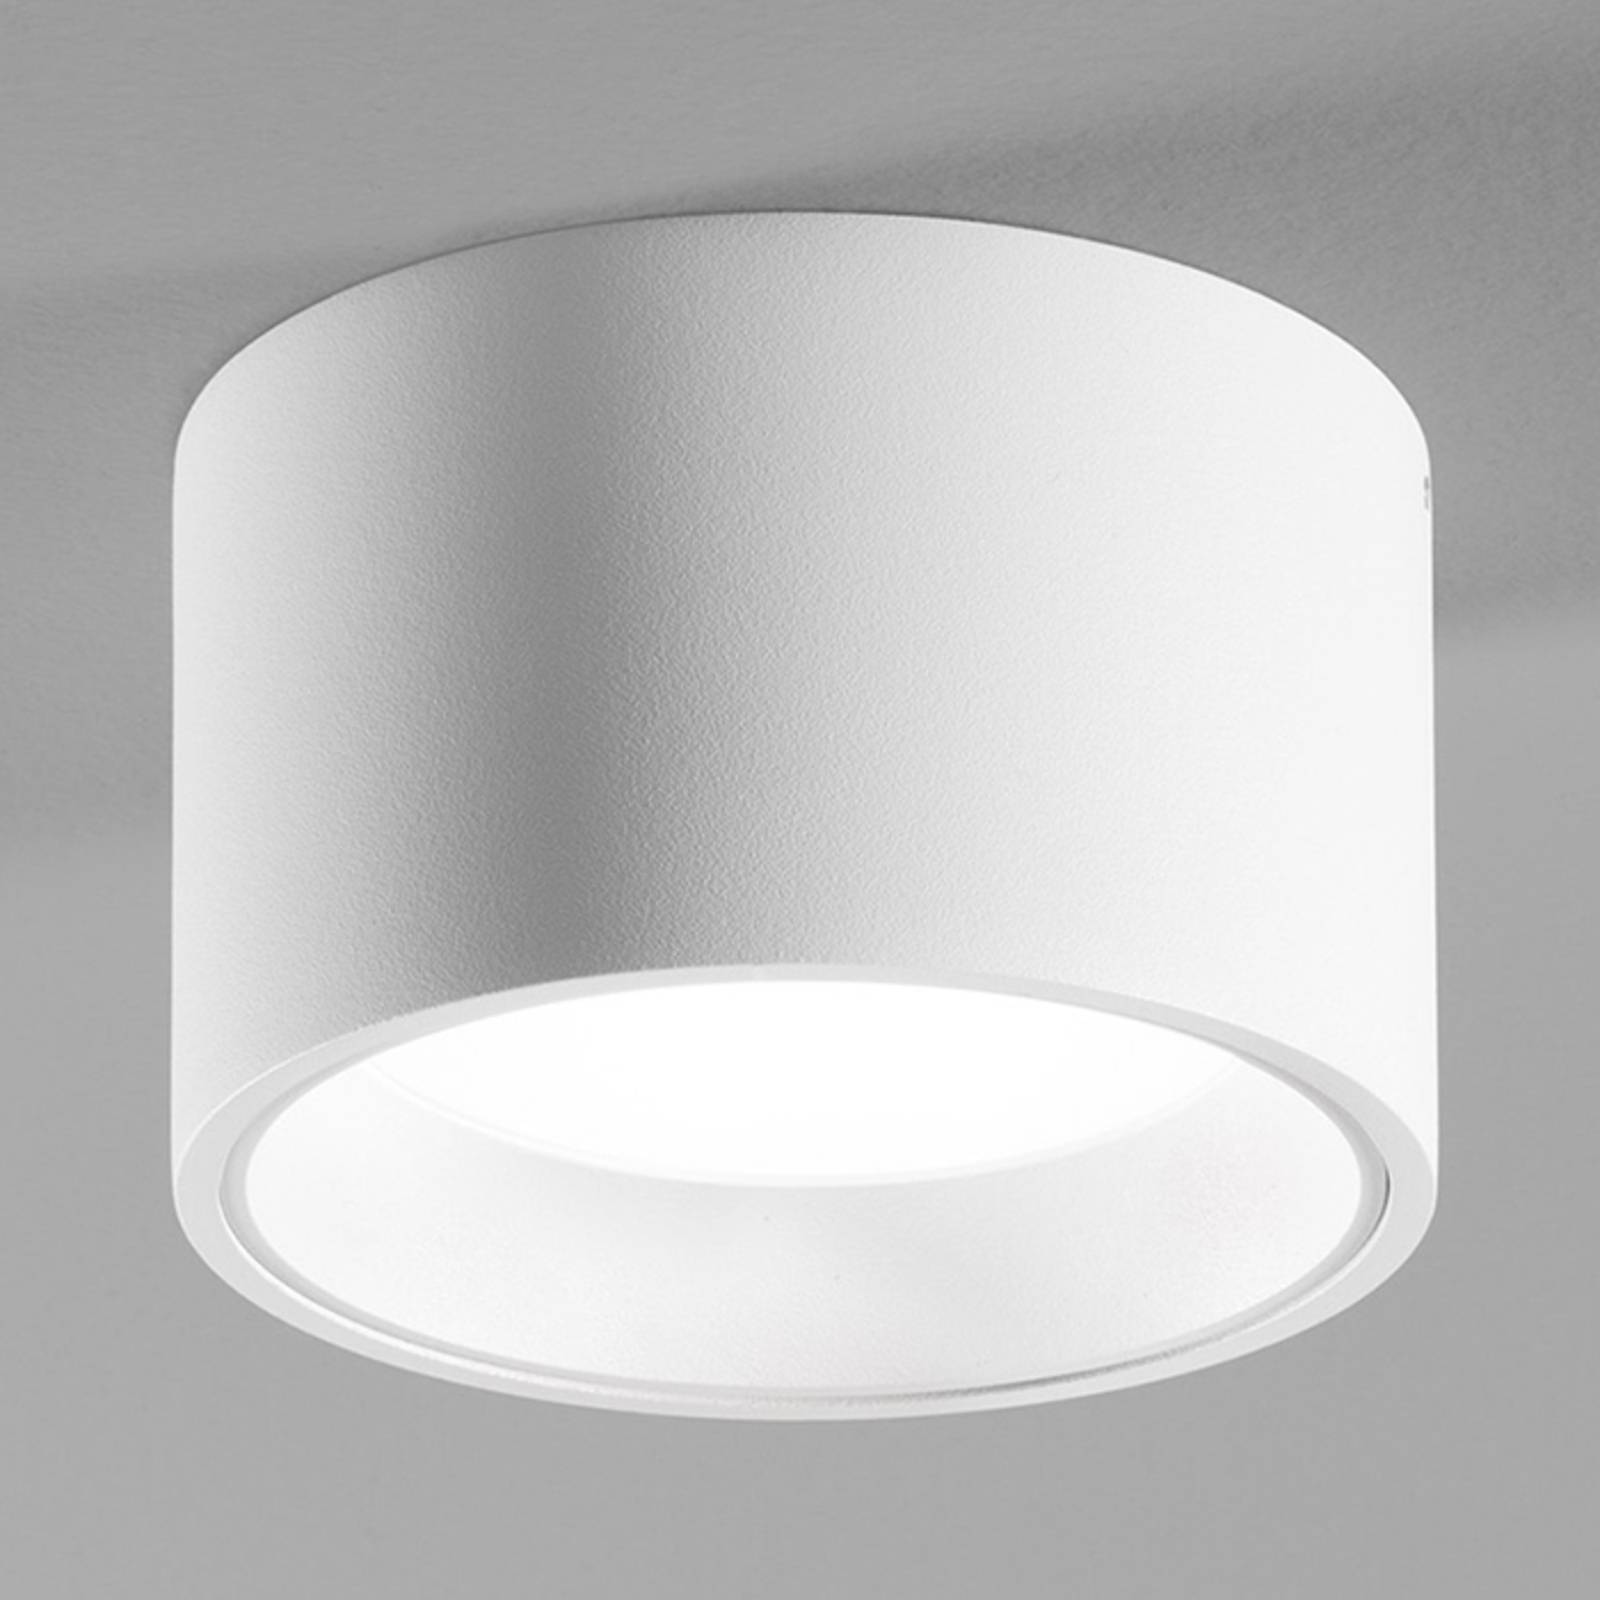 E-shop Biele stropné LED svietidlo Ringo s IP54